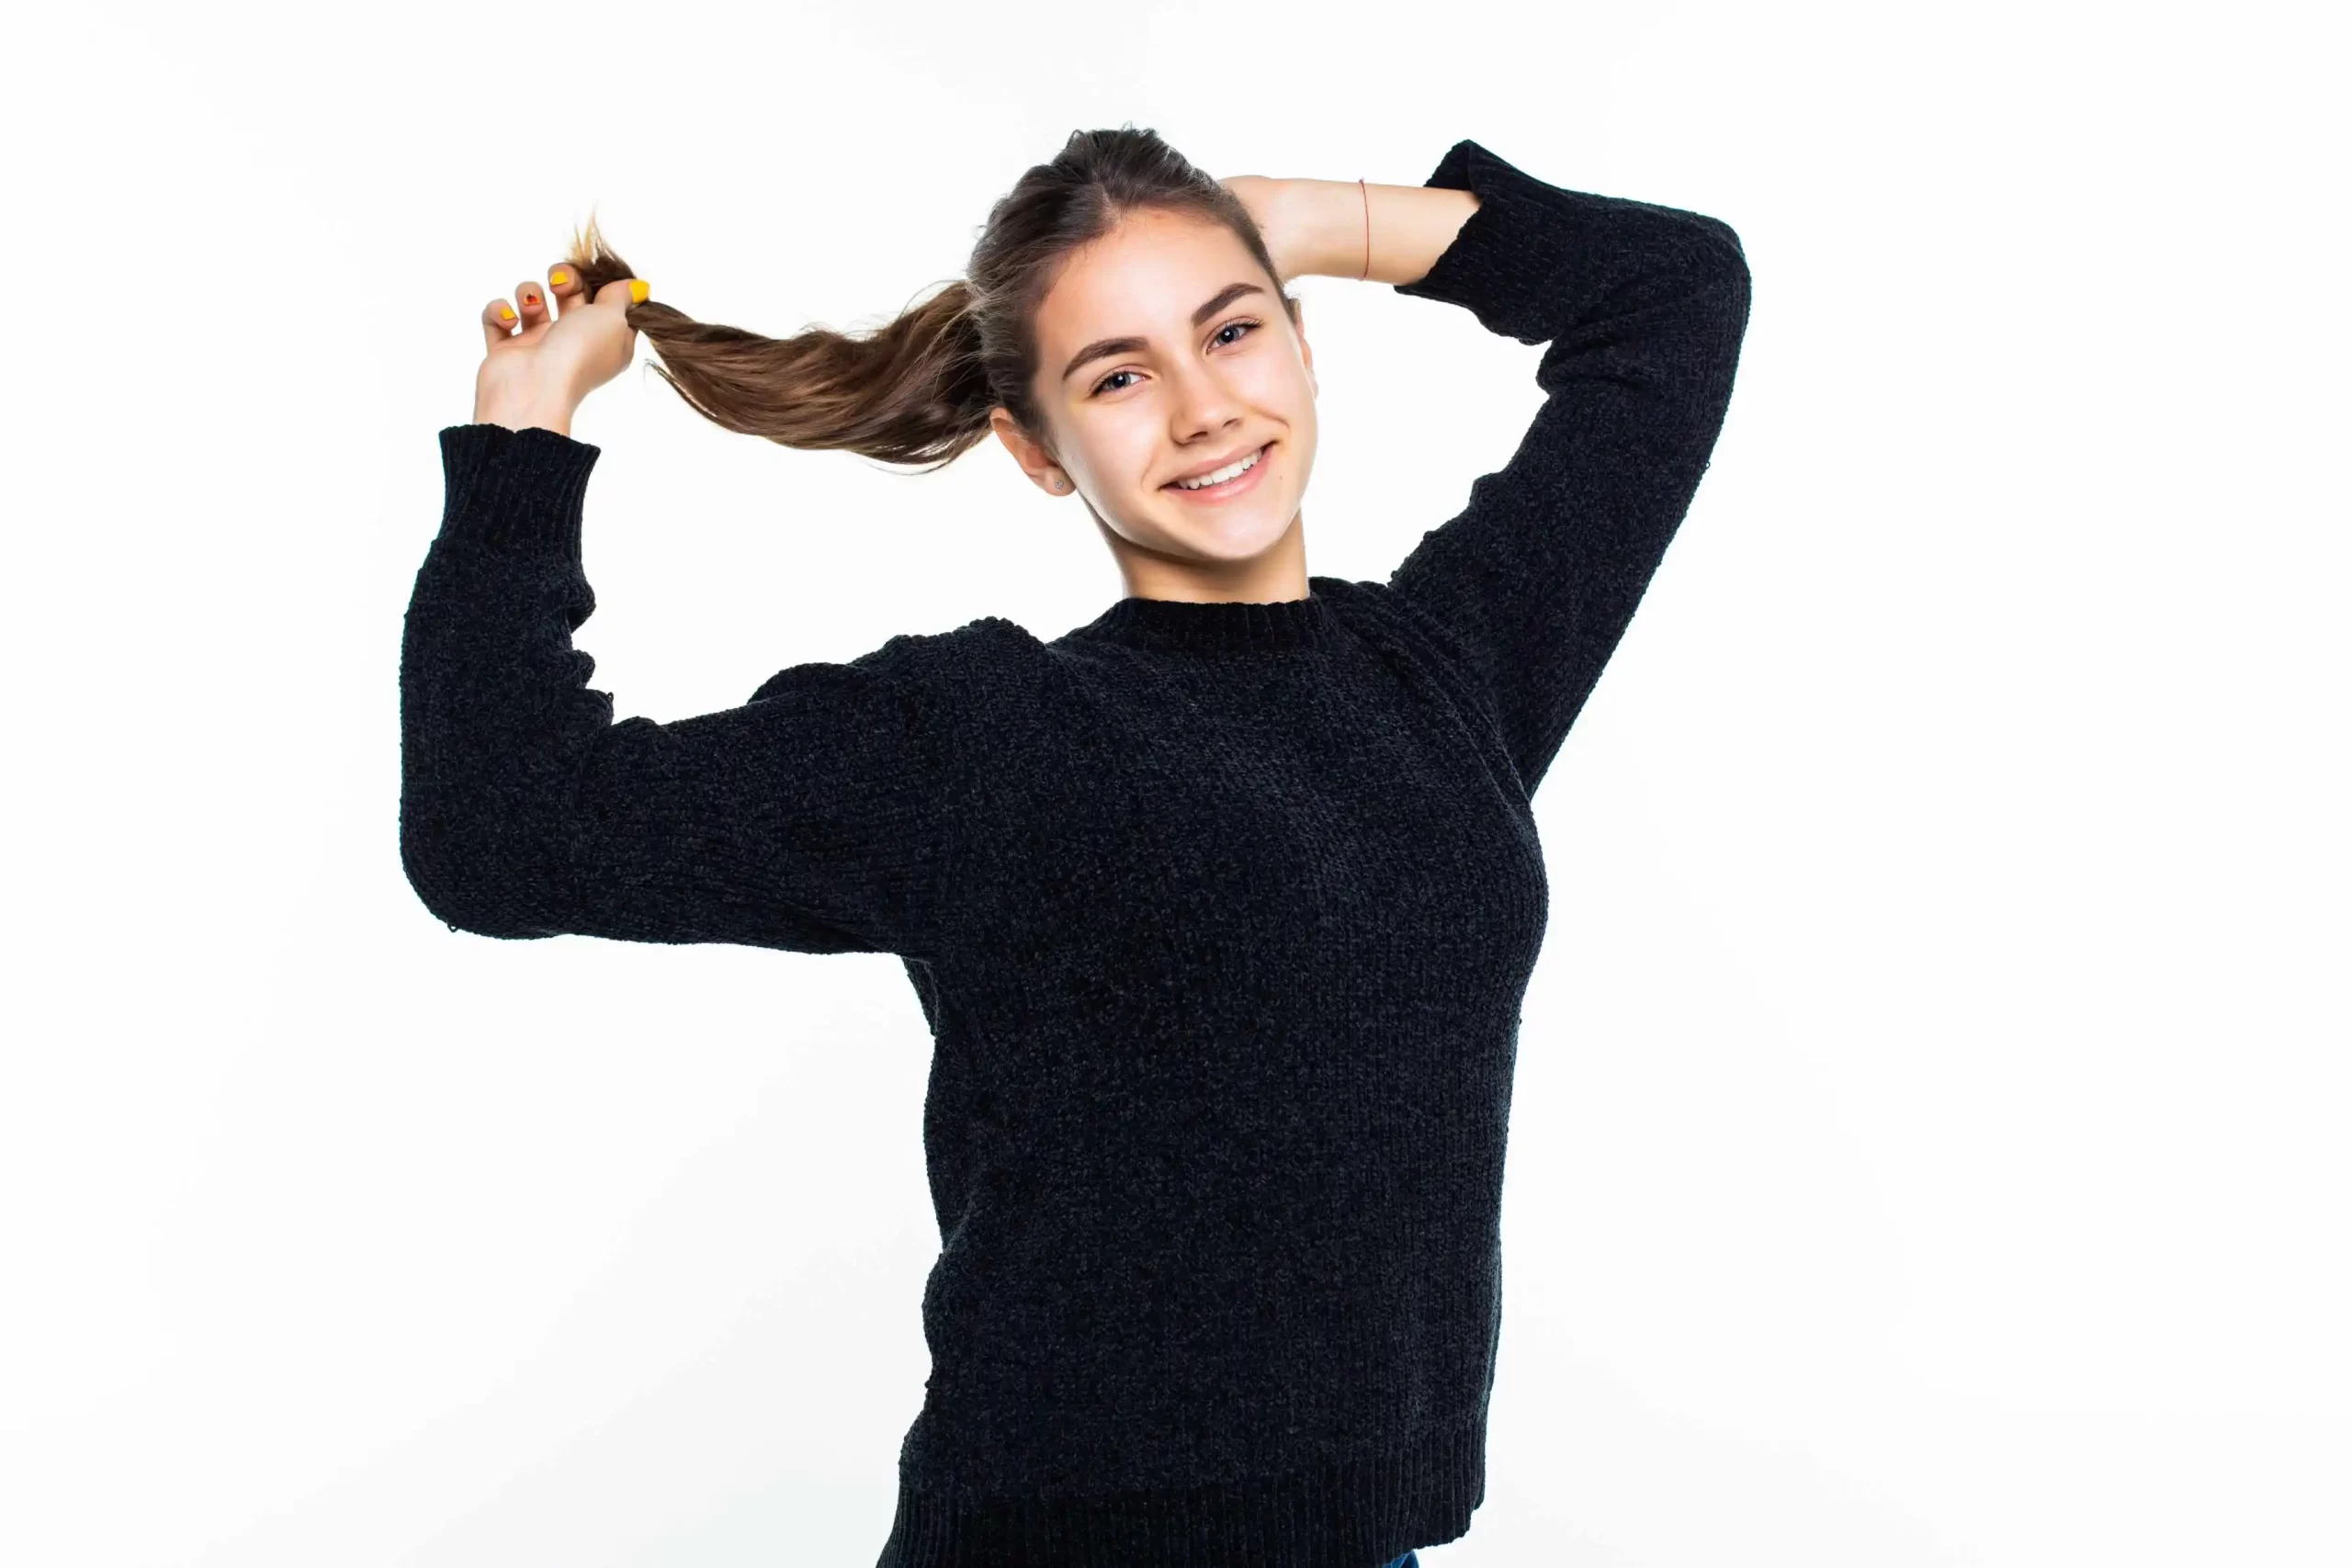 Kadın Tipi Saç Dökülmesi Nasıl Anlaşılır?